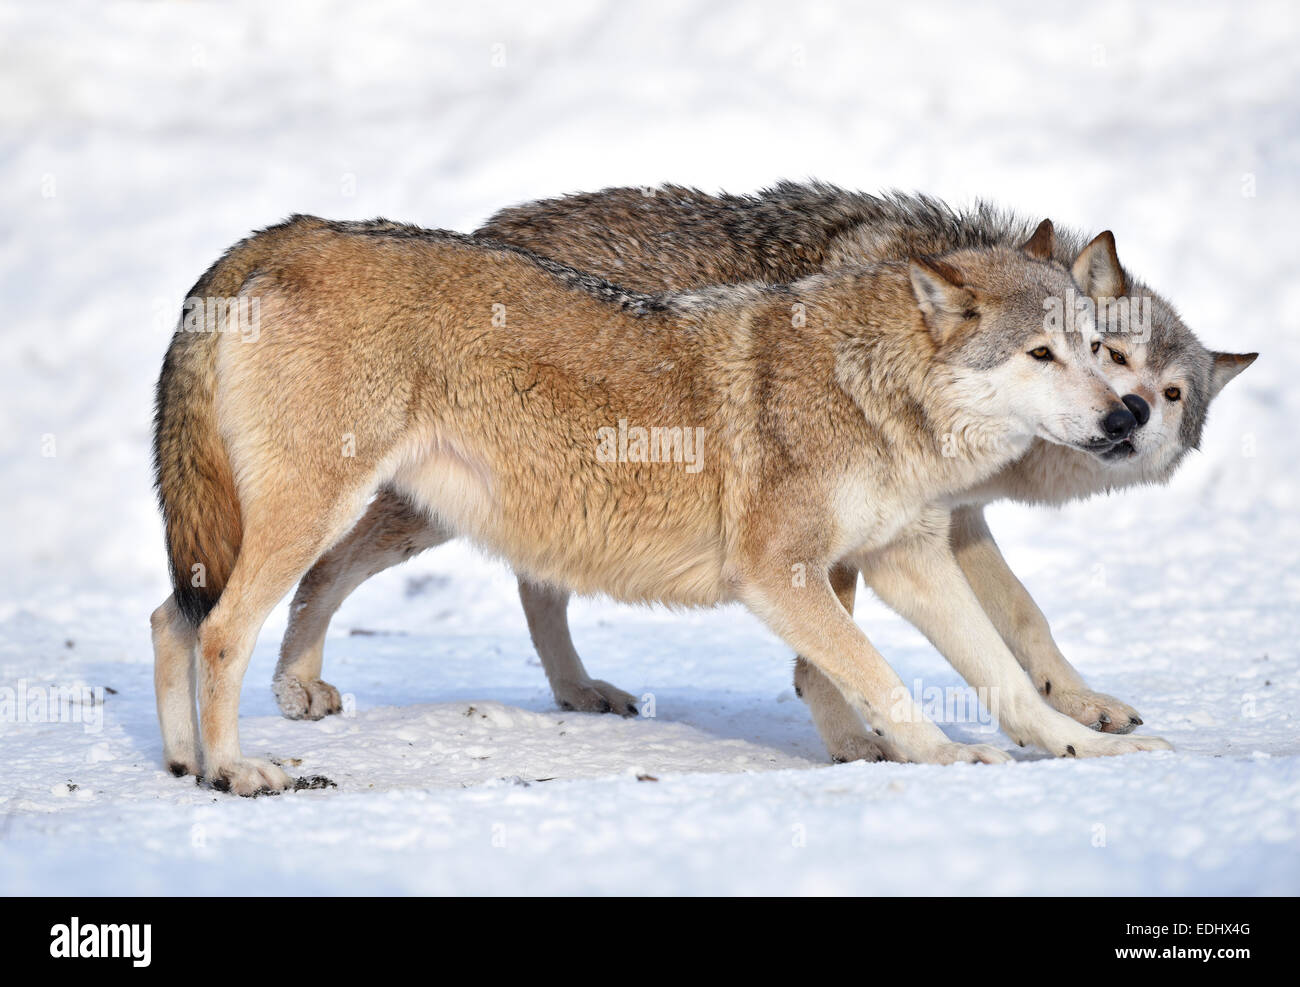 Benvenuto, outreach, dominazione, leccare, Northwestern lupo (Canis lupus occidentalis) nella neve, captive, Baden-Württemberg Foto Stock